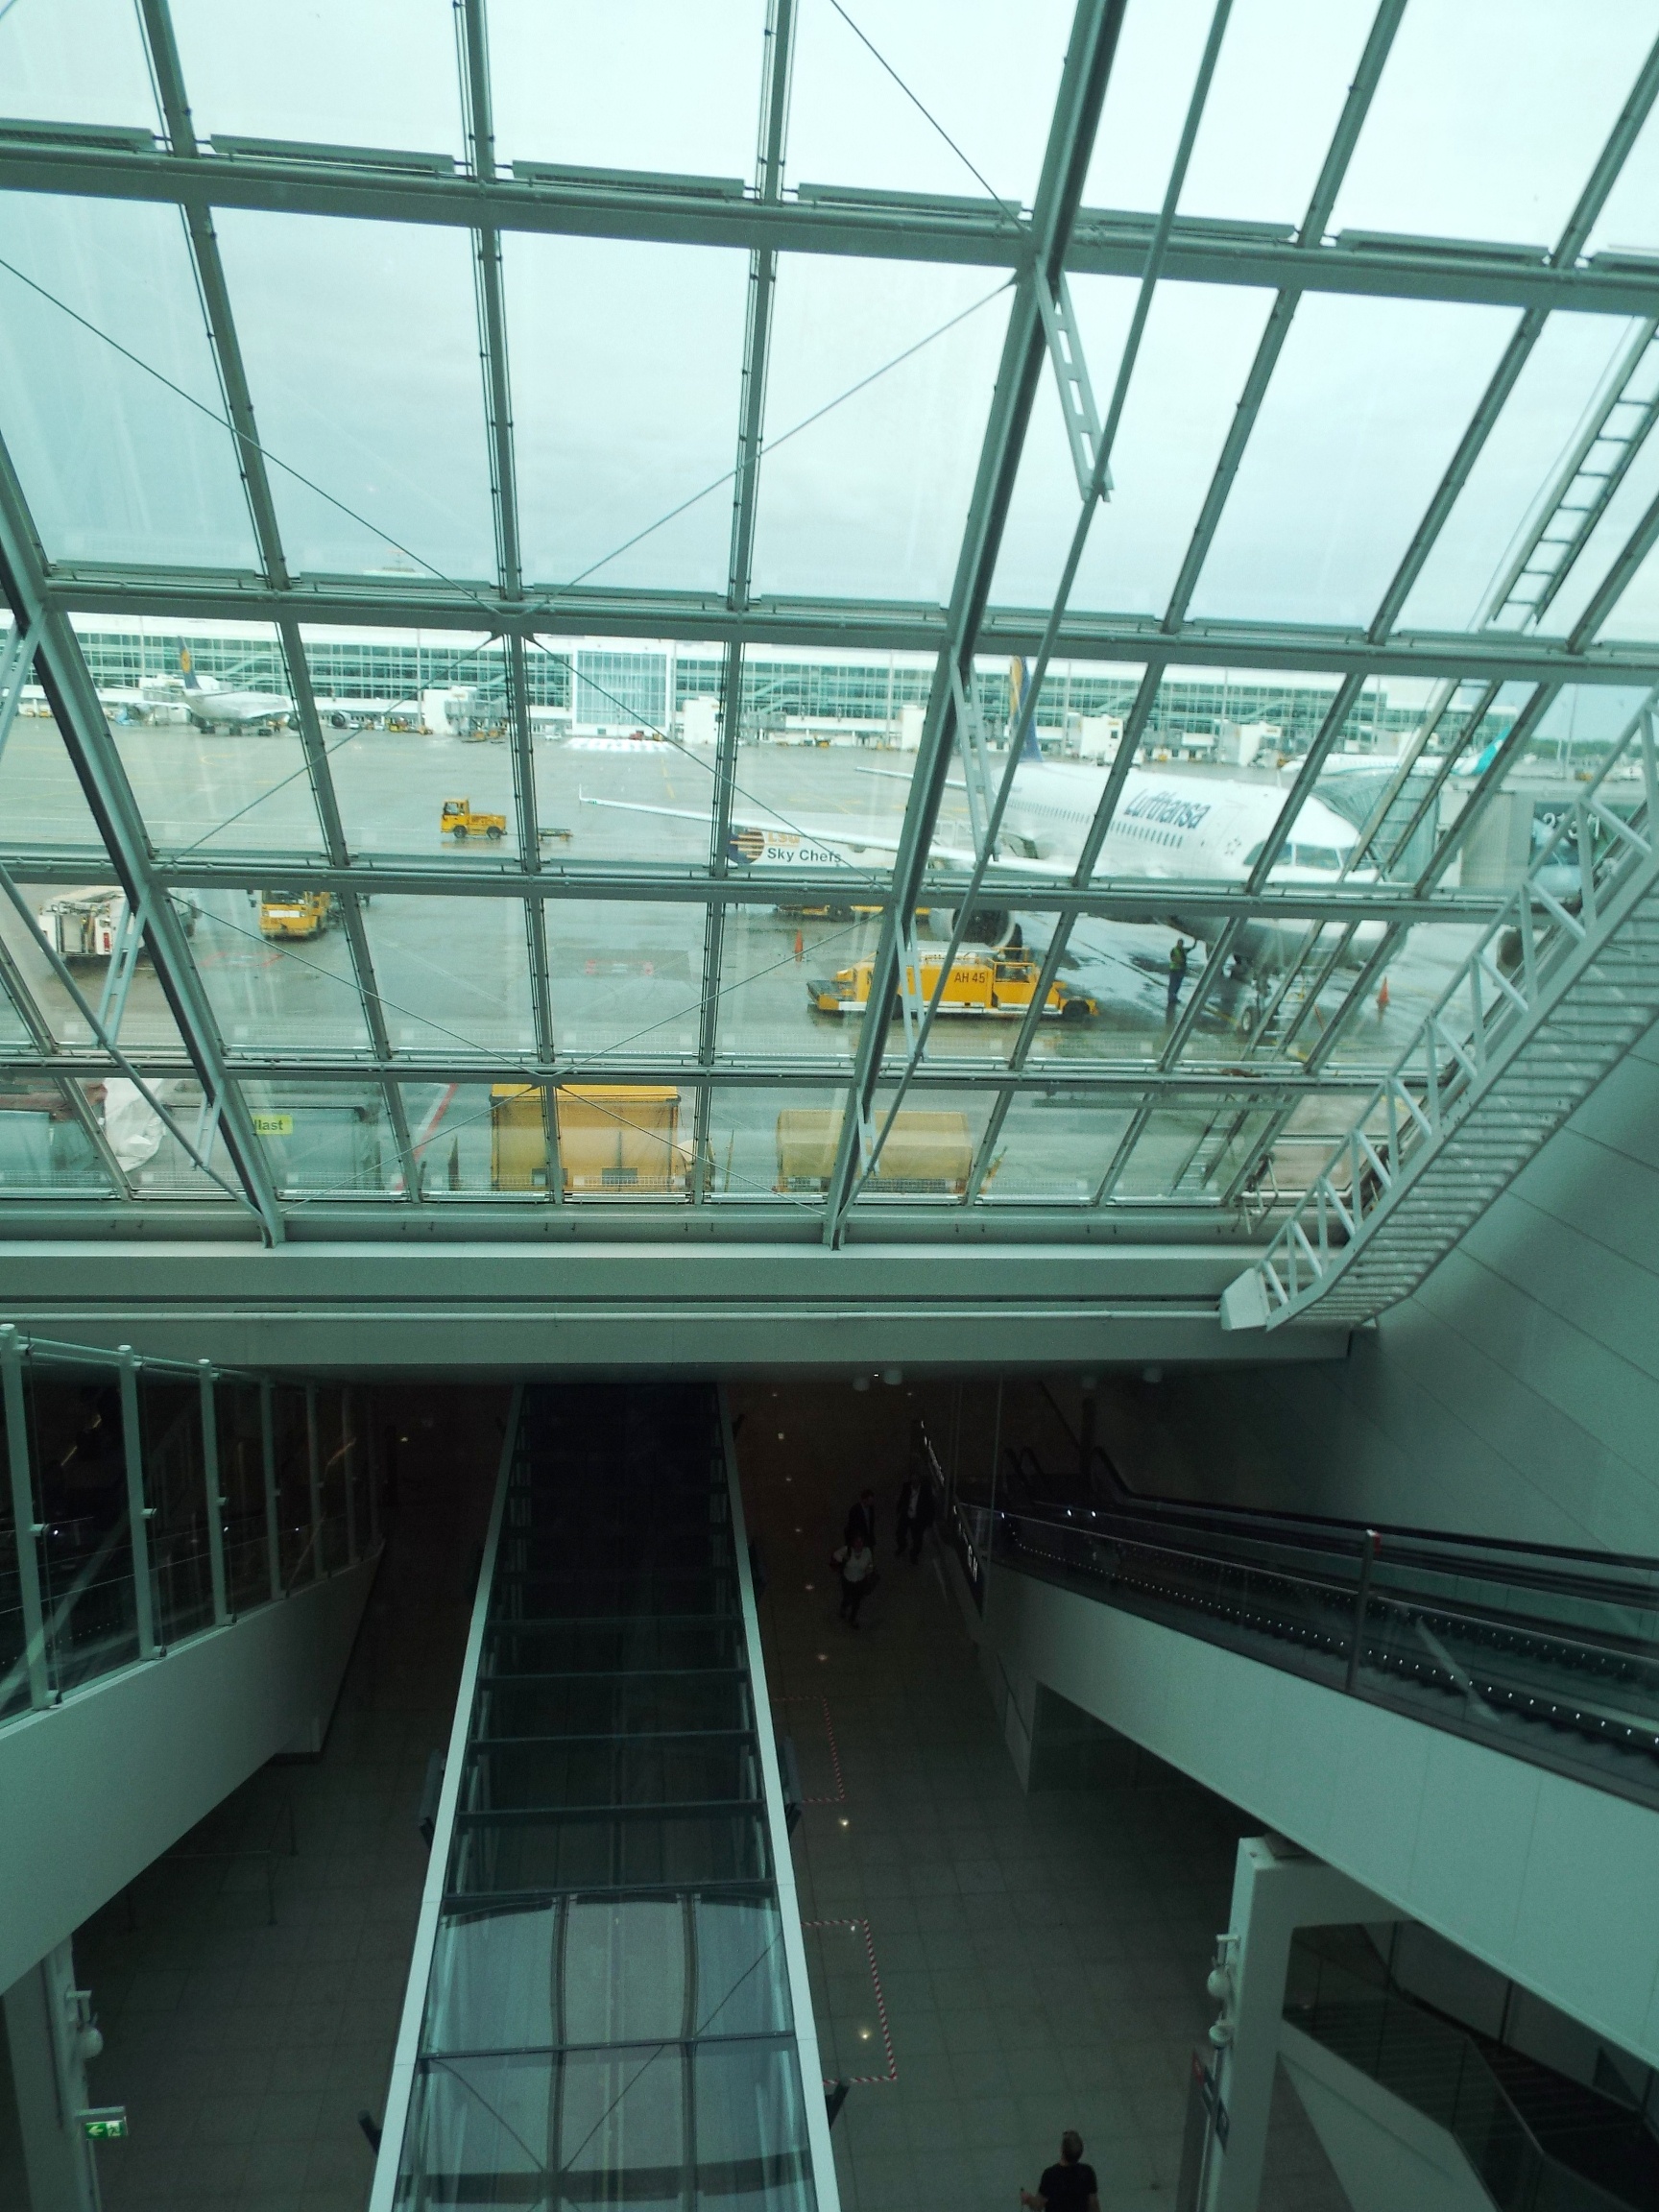 Lépcsőház: Fent repülőgépek, lent földalatti